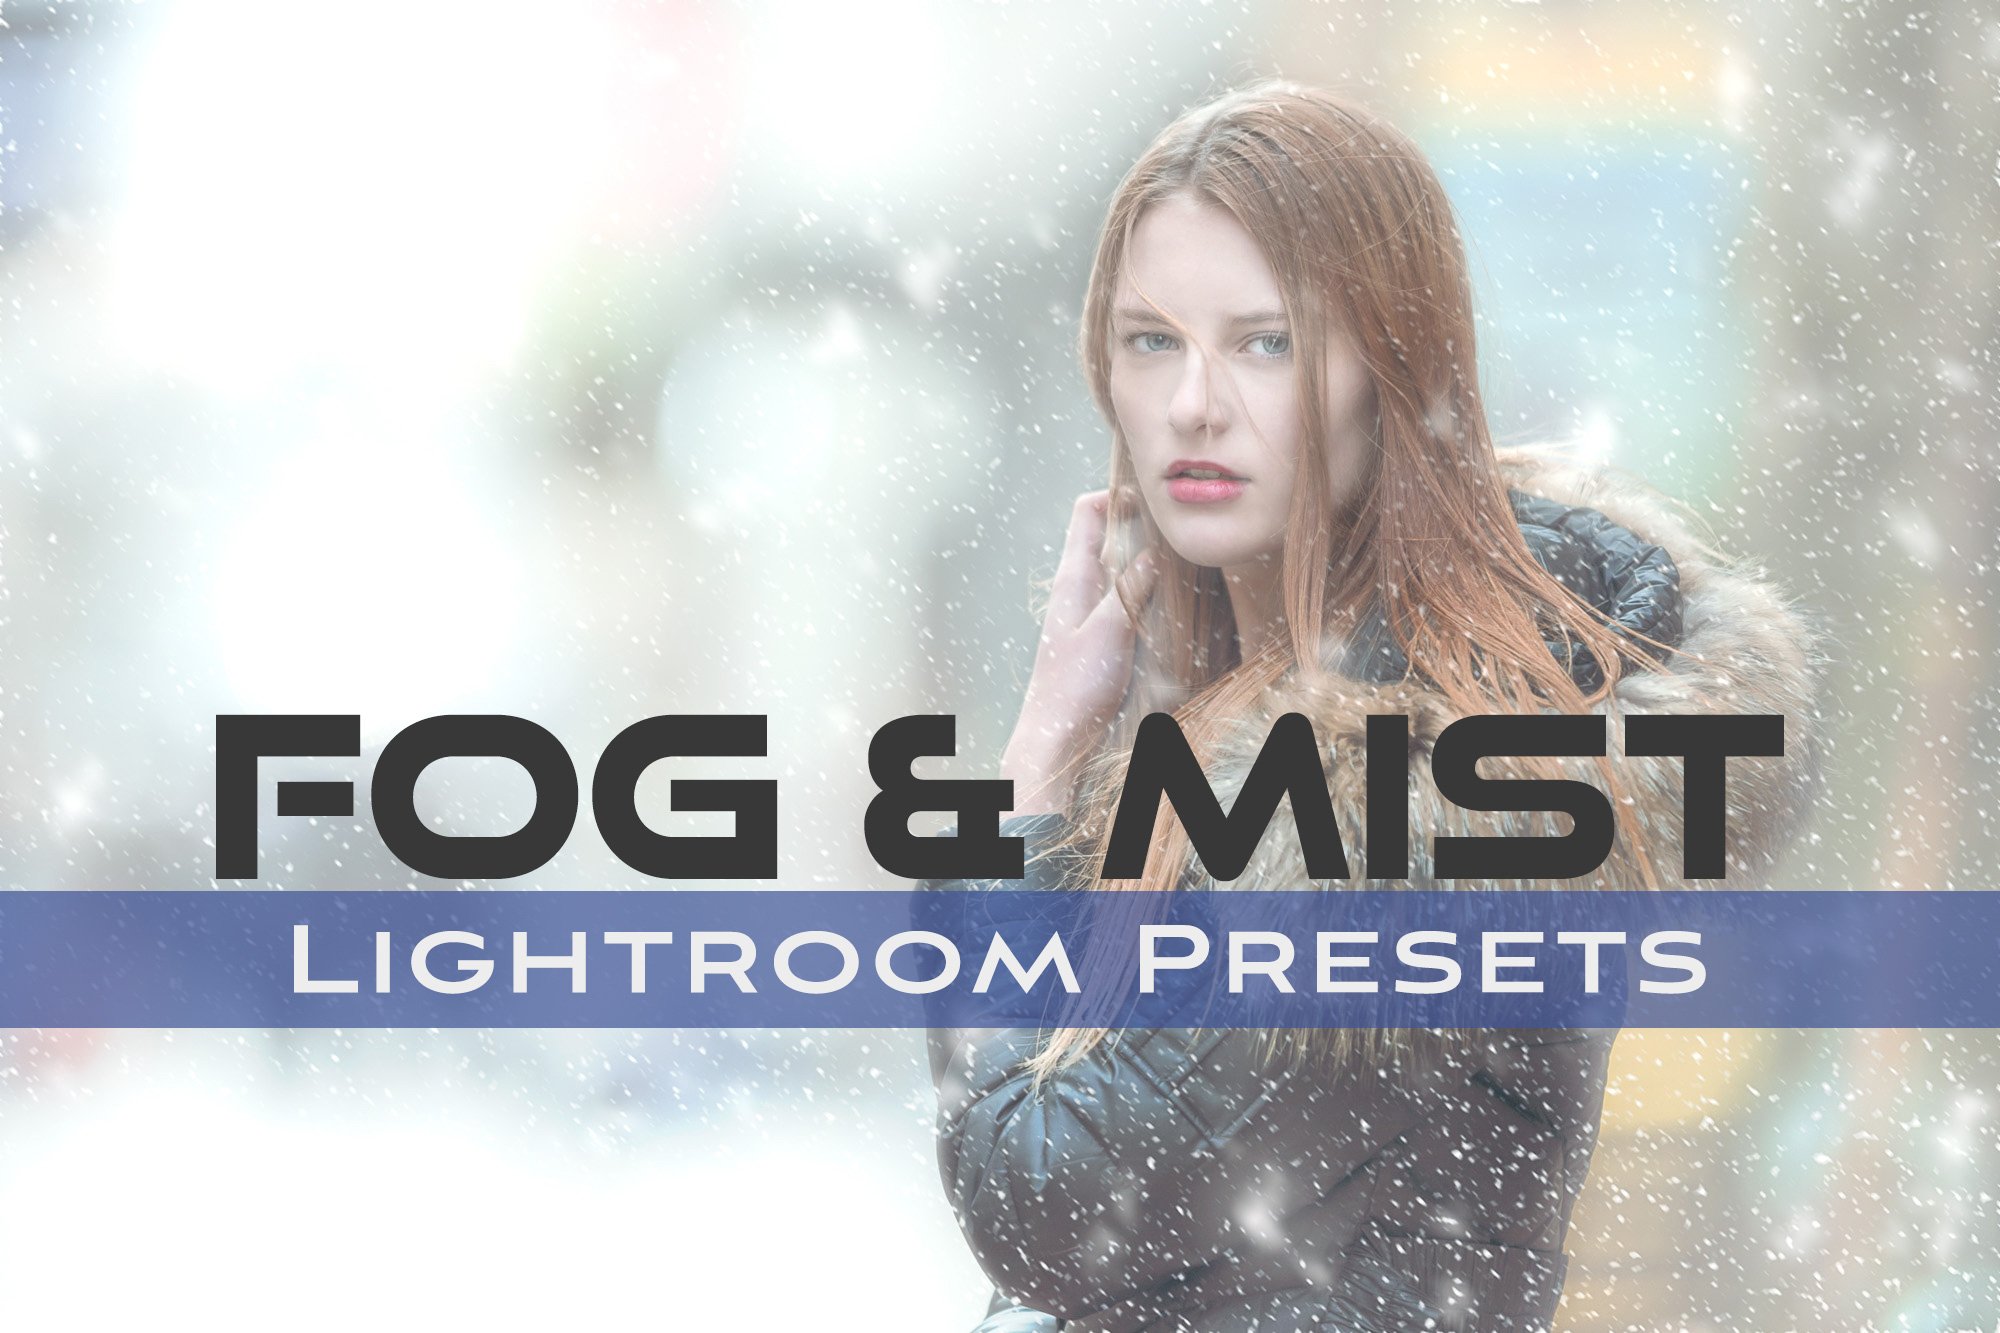 Fog and Mist Lightroom Presetscover image.